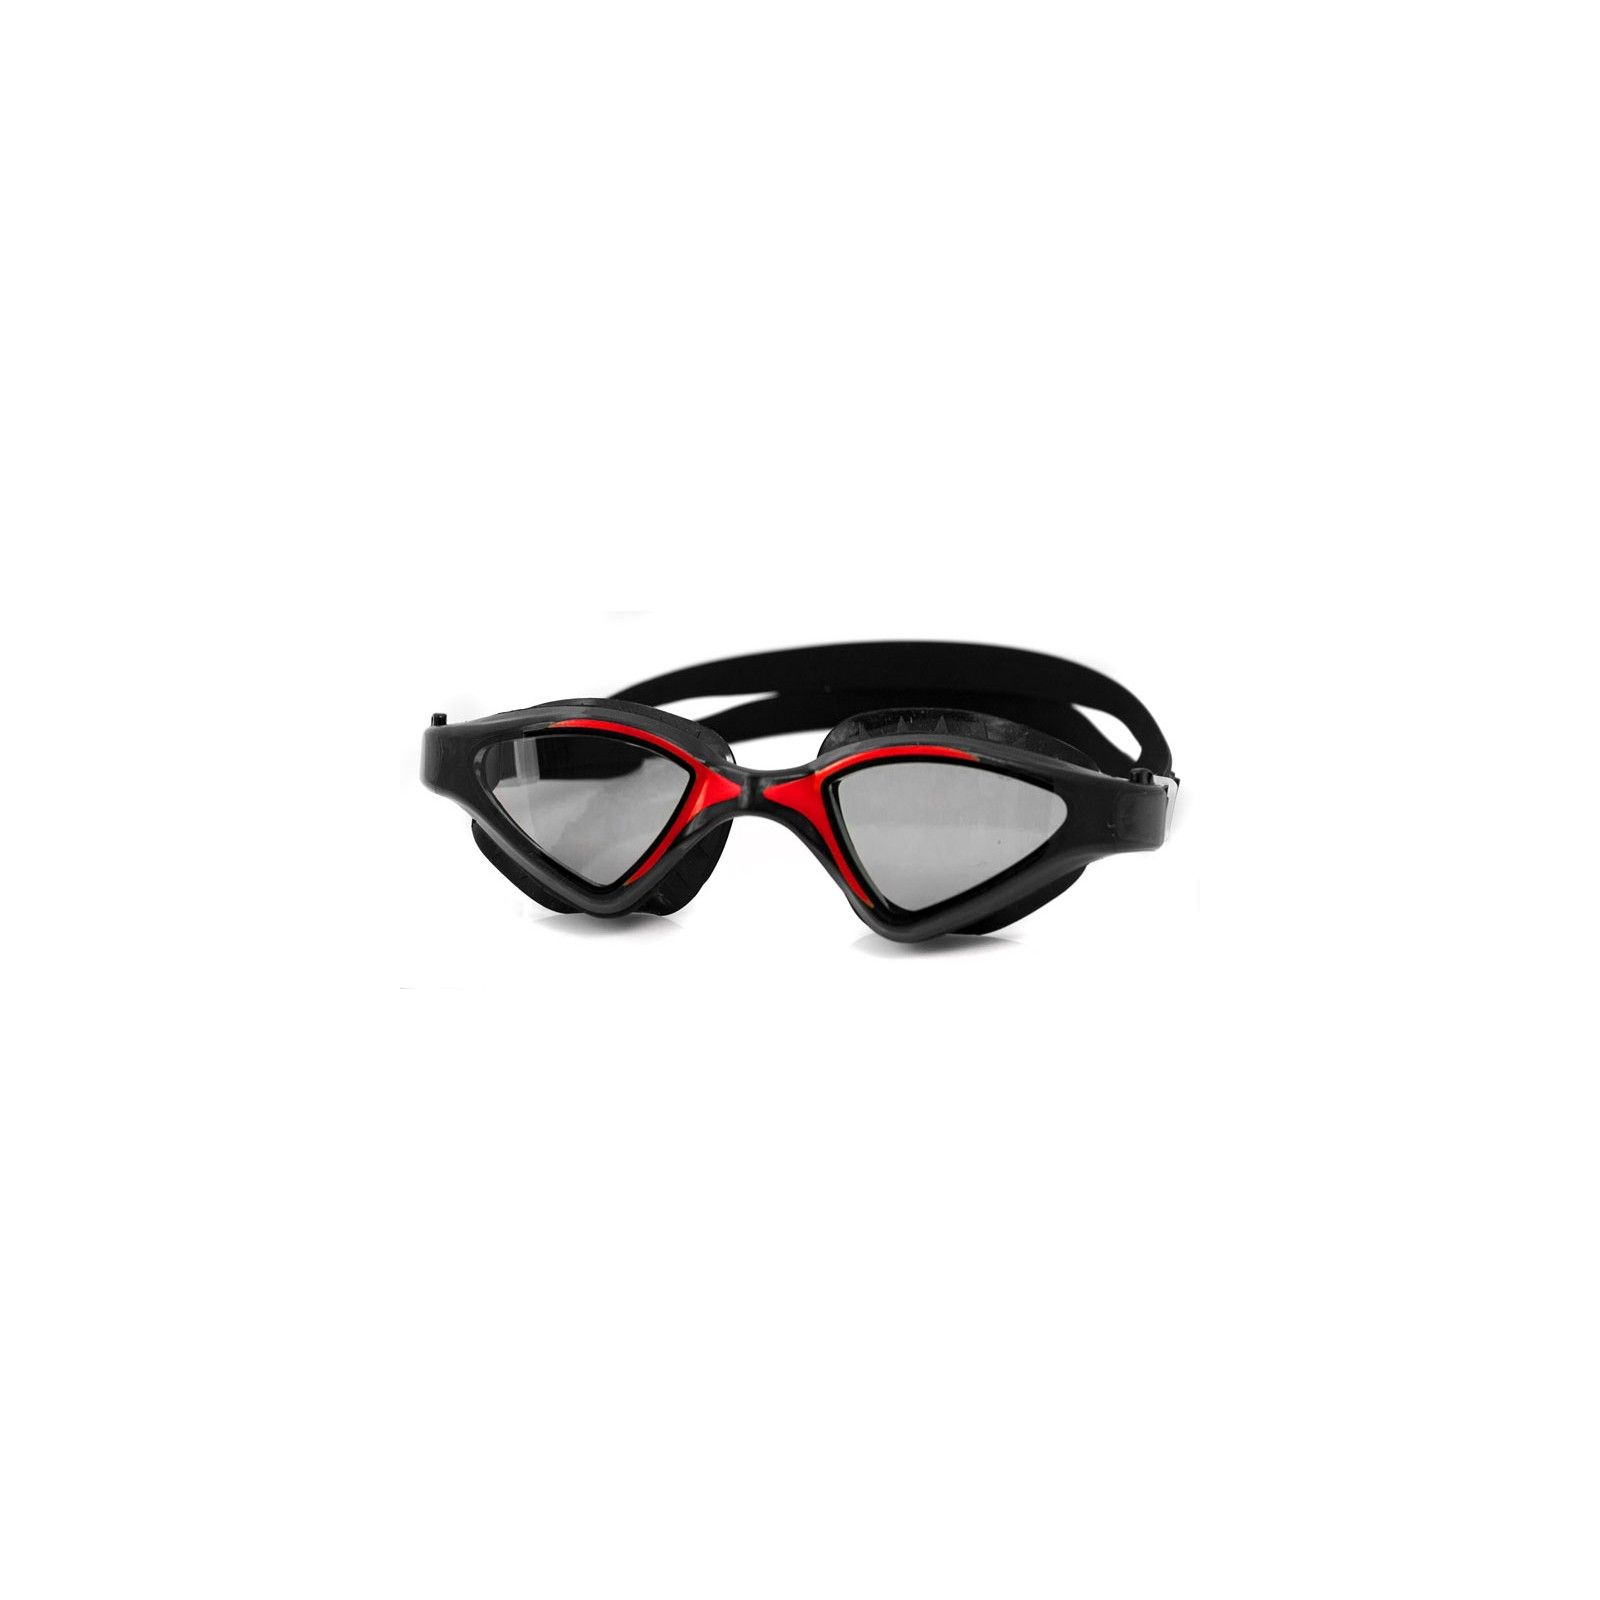 Окуляри для плавання Aqua Speed Raptor 049-31 5852 чорний, червоний OSFM (5908217658524)